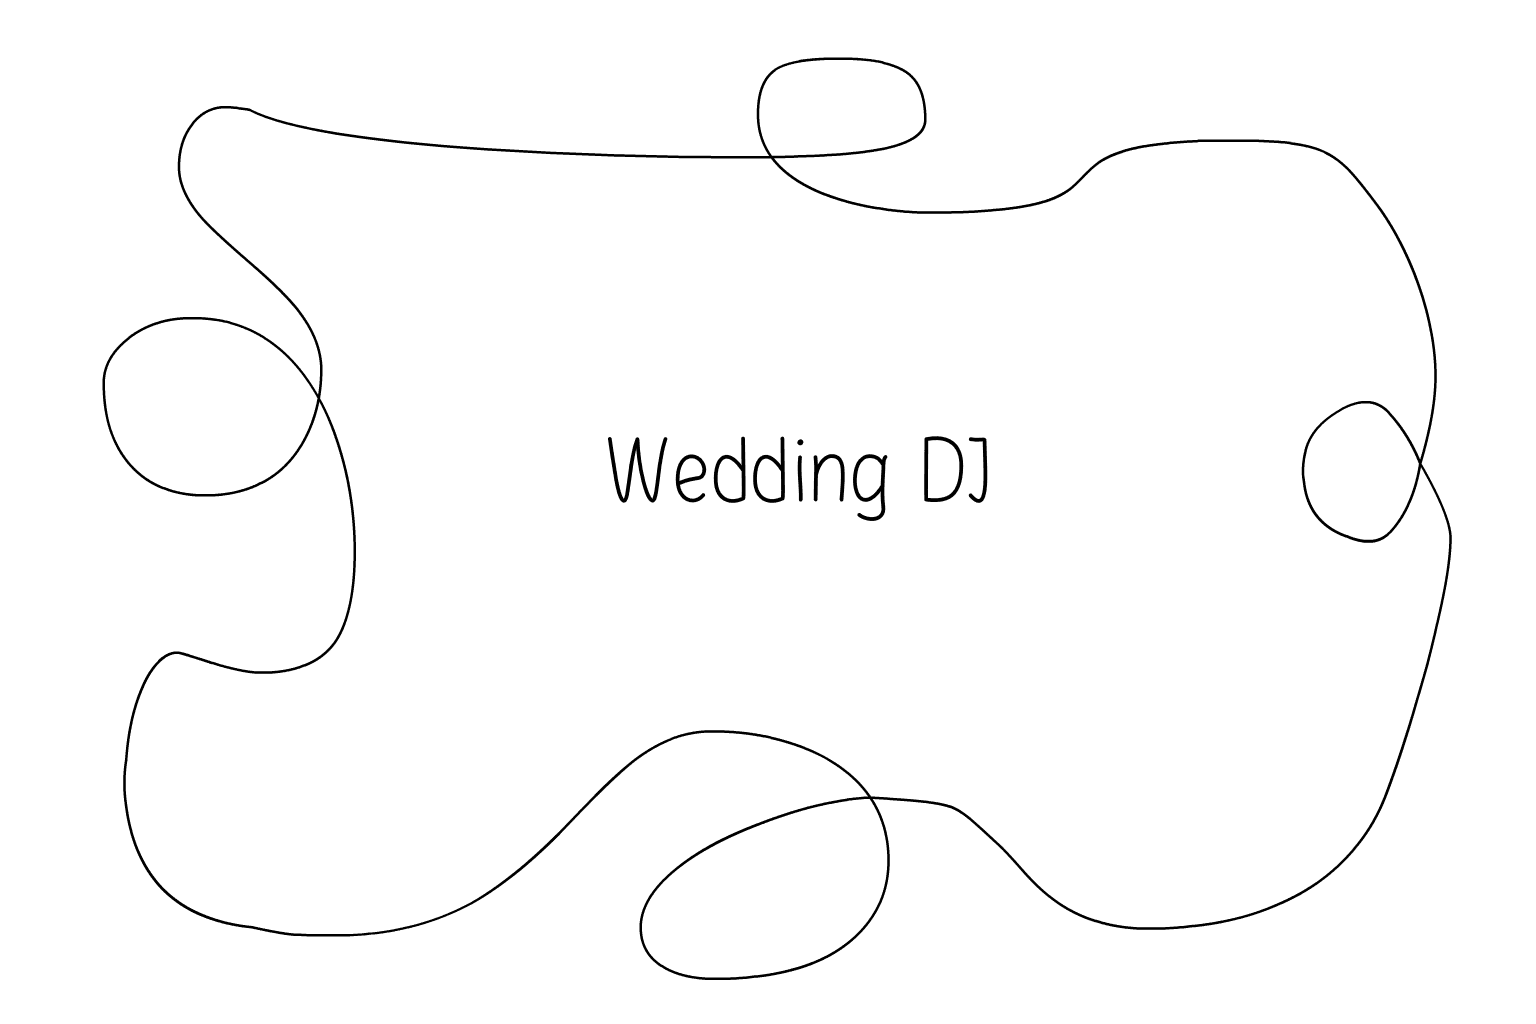 Ilustração de DJ e música de casamento